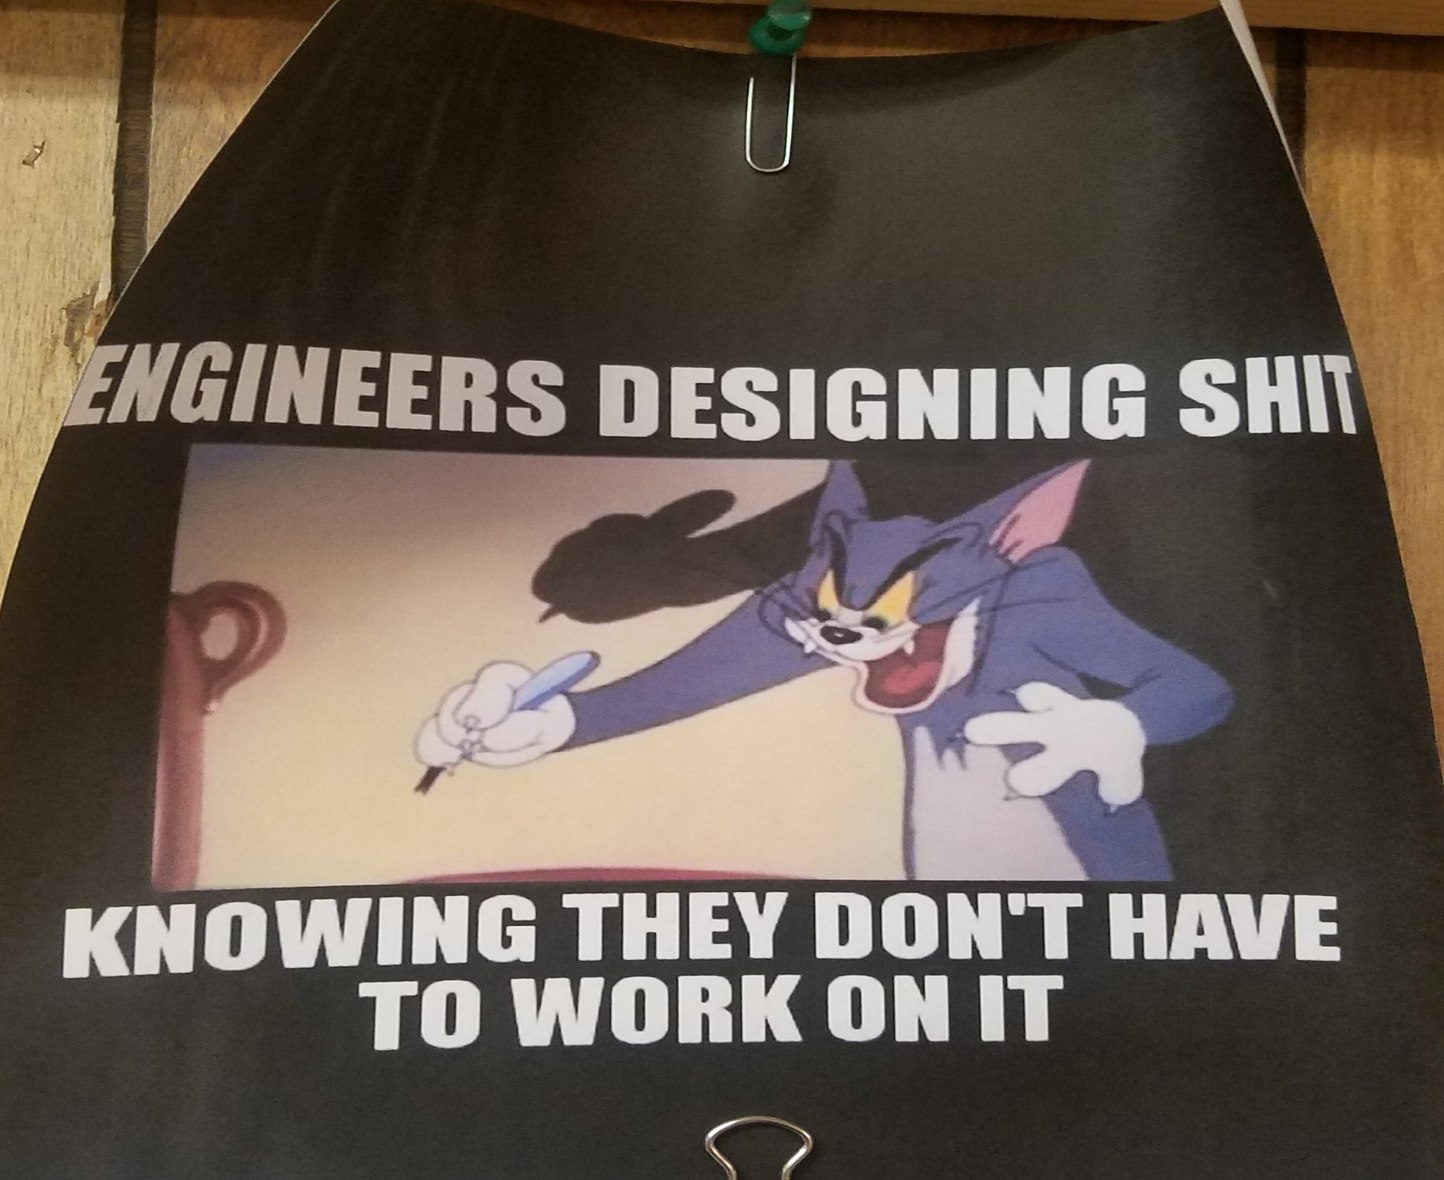 Hung up in job trailer above blueprints - meme